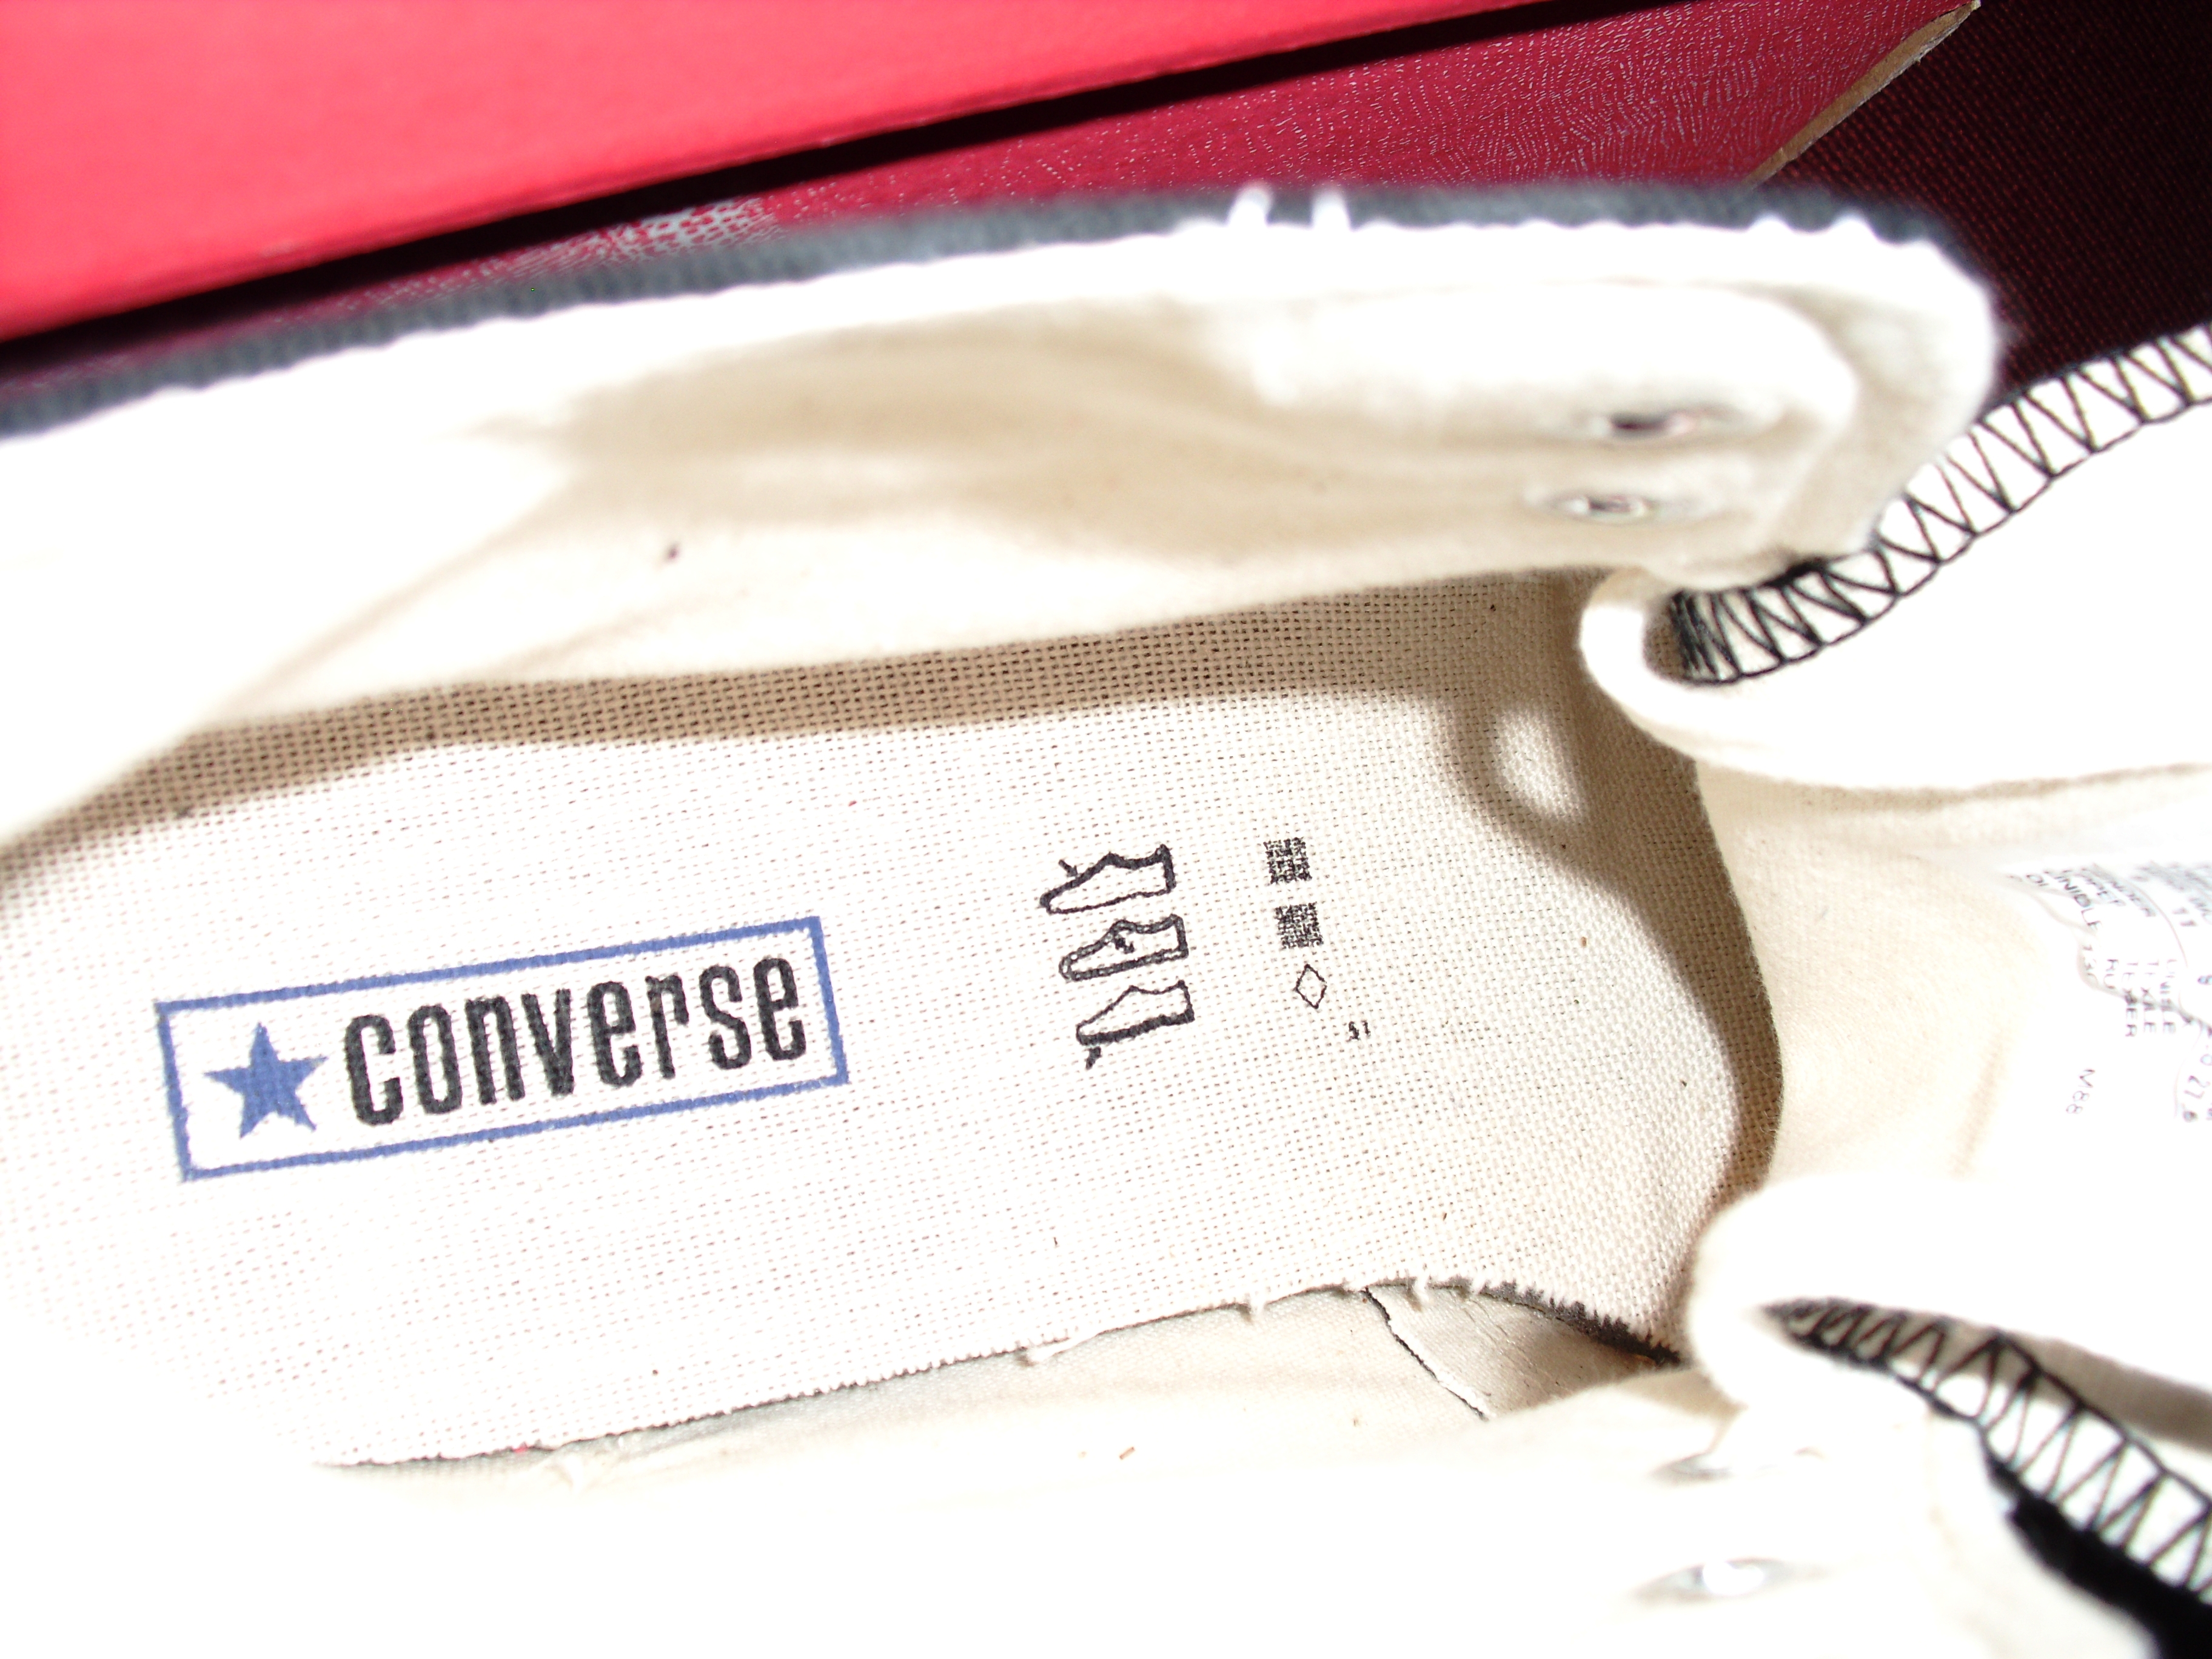 converse logo on inside of shoe